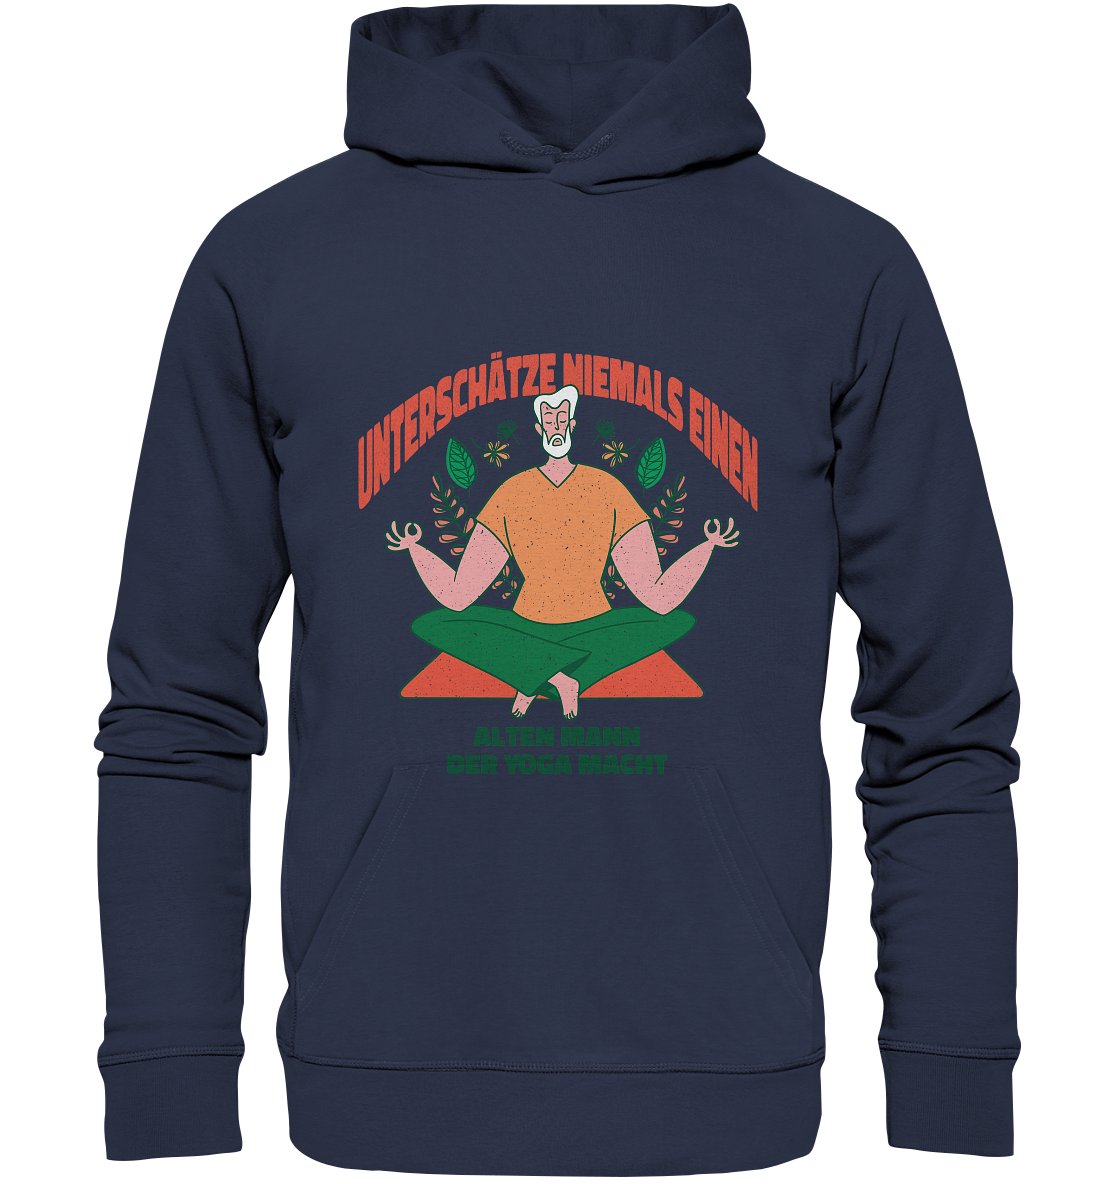 Unterschätze niemals einen alten Mann Yoga - Premium Unisex Hoodie - Online Kaufhaus München